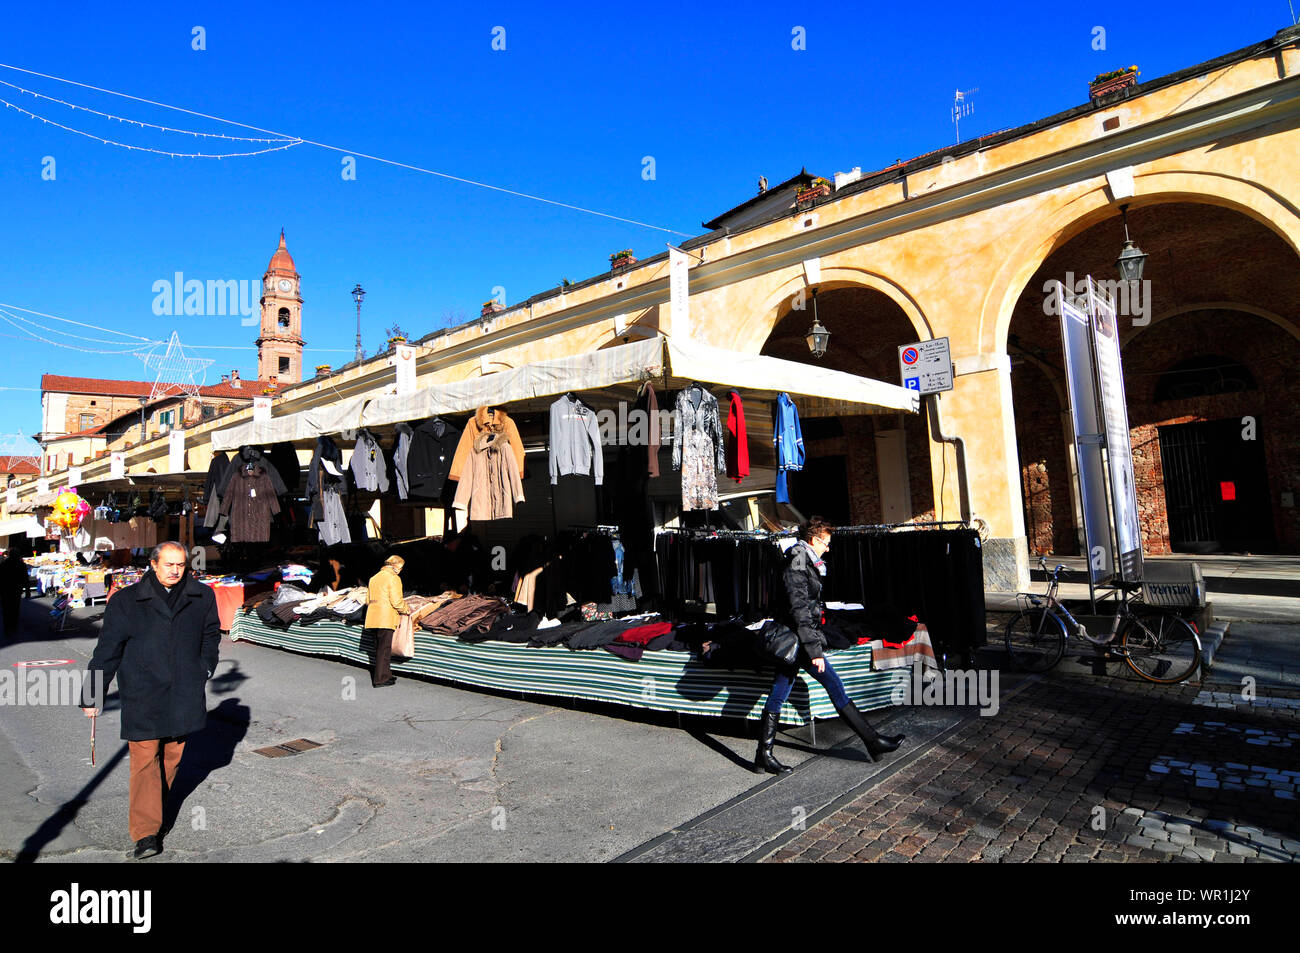 Le marché coloré de Bra, en Italie. Banque D'Images